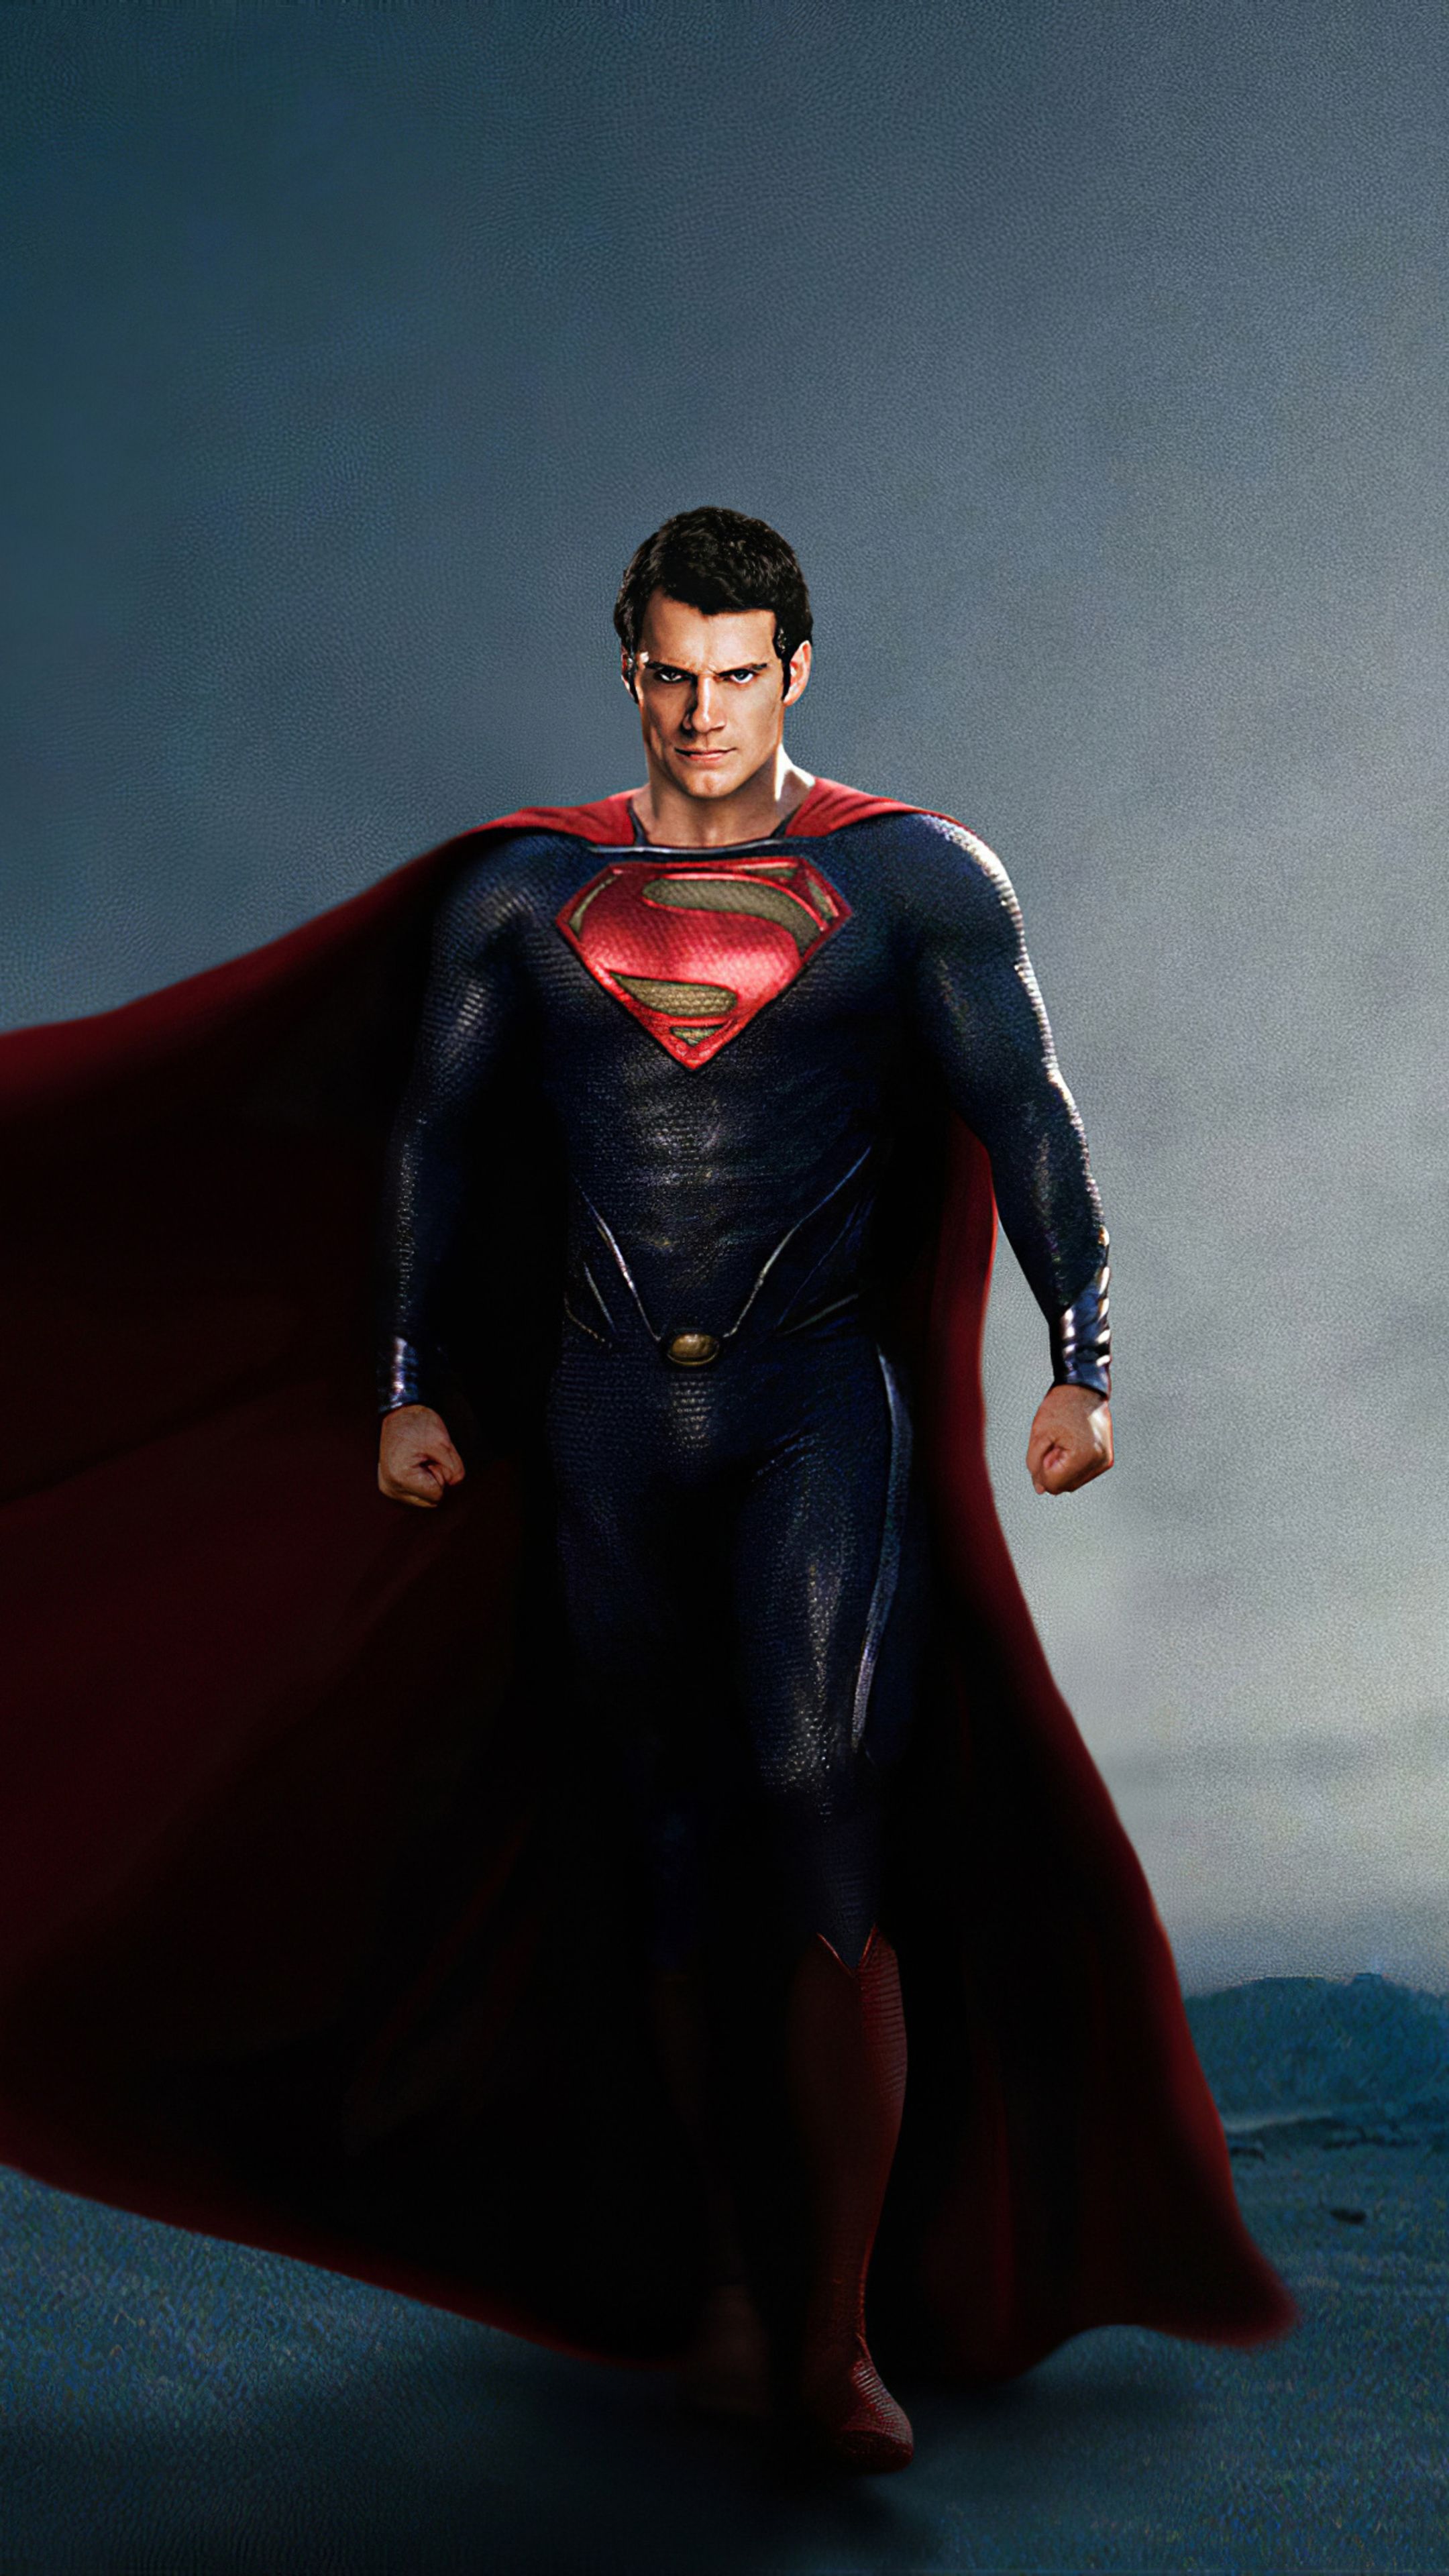 4k Superman Henry Cavill 2020 In 2160x3840 Resolution. Superman henry cavill, Superman wallpaper, Superman